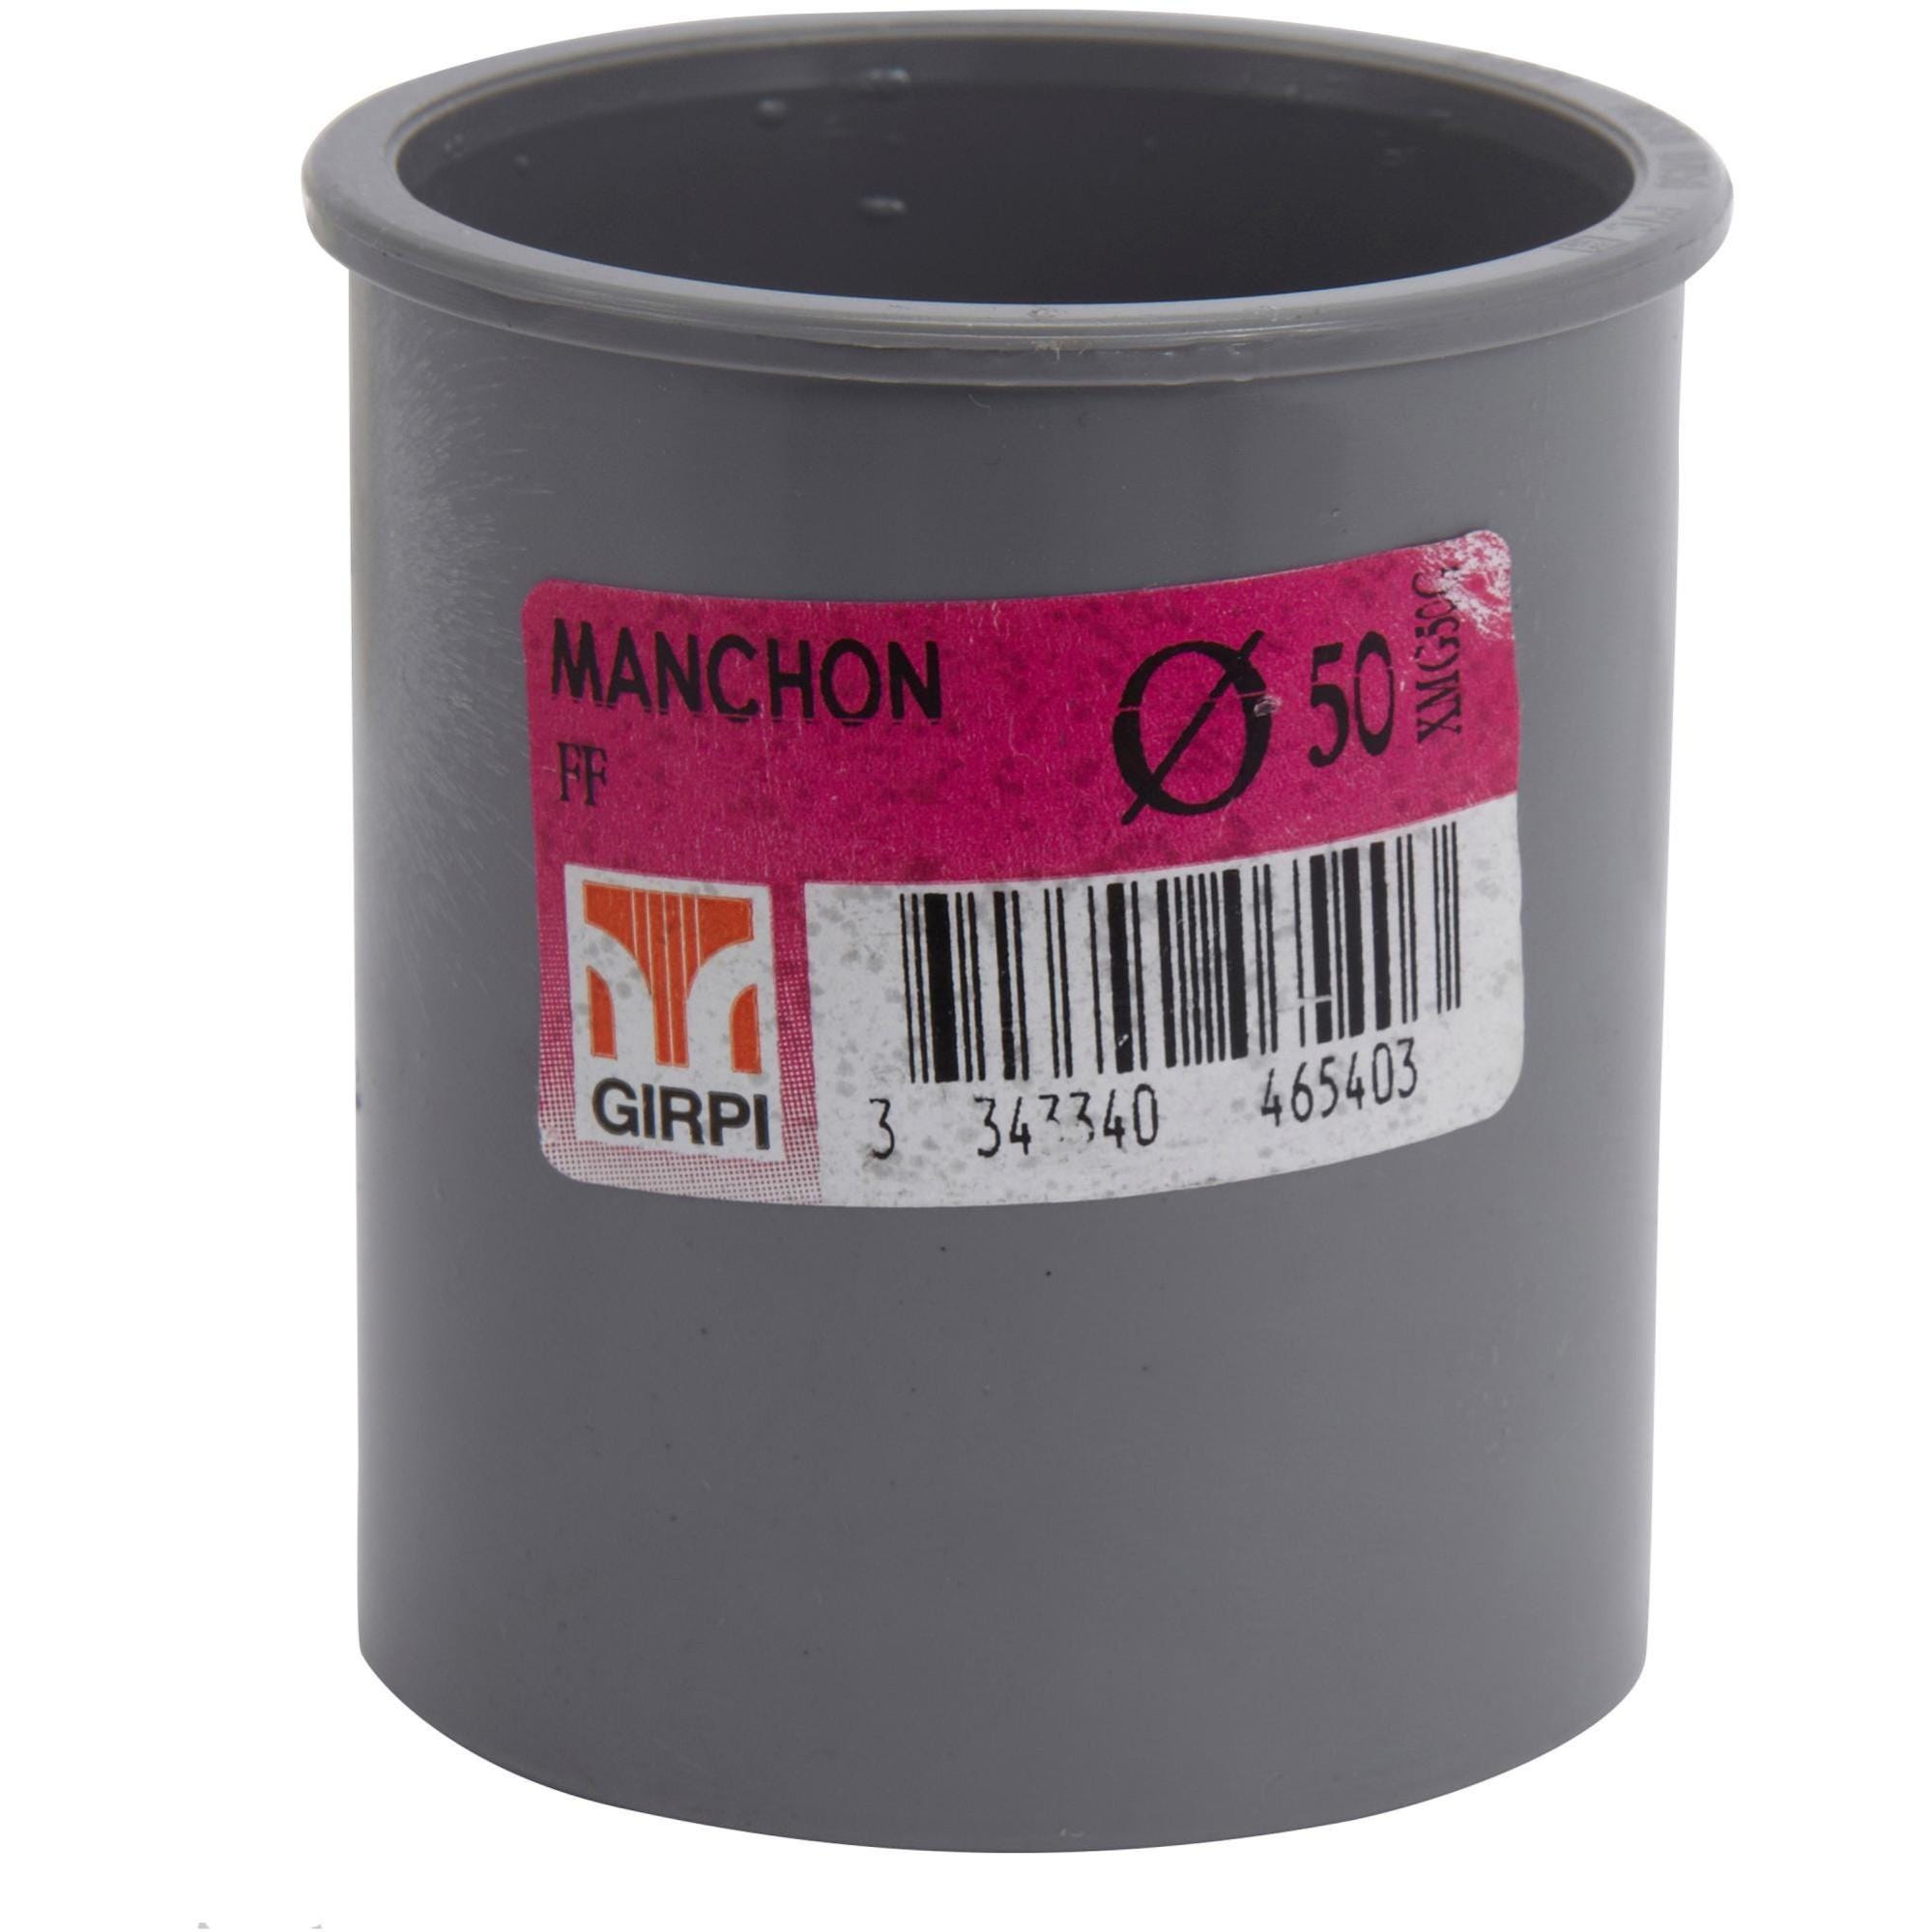 Manchon Coulissant PVC Blanc Ø40 Femelle-Femelle